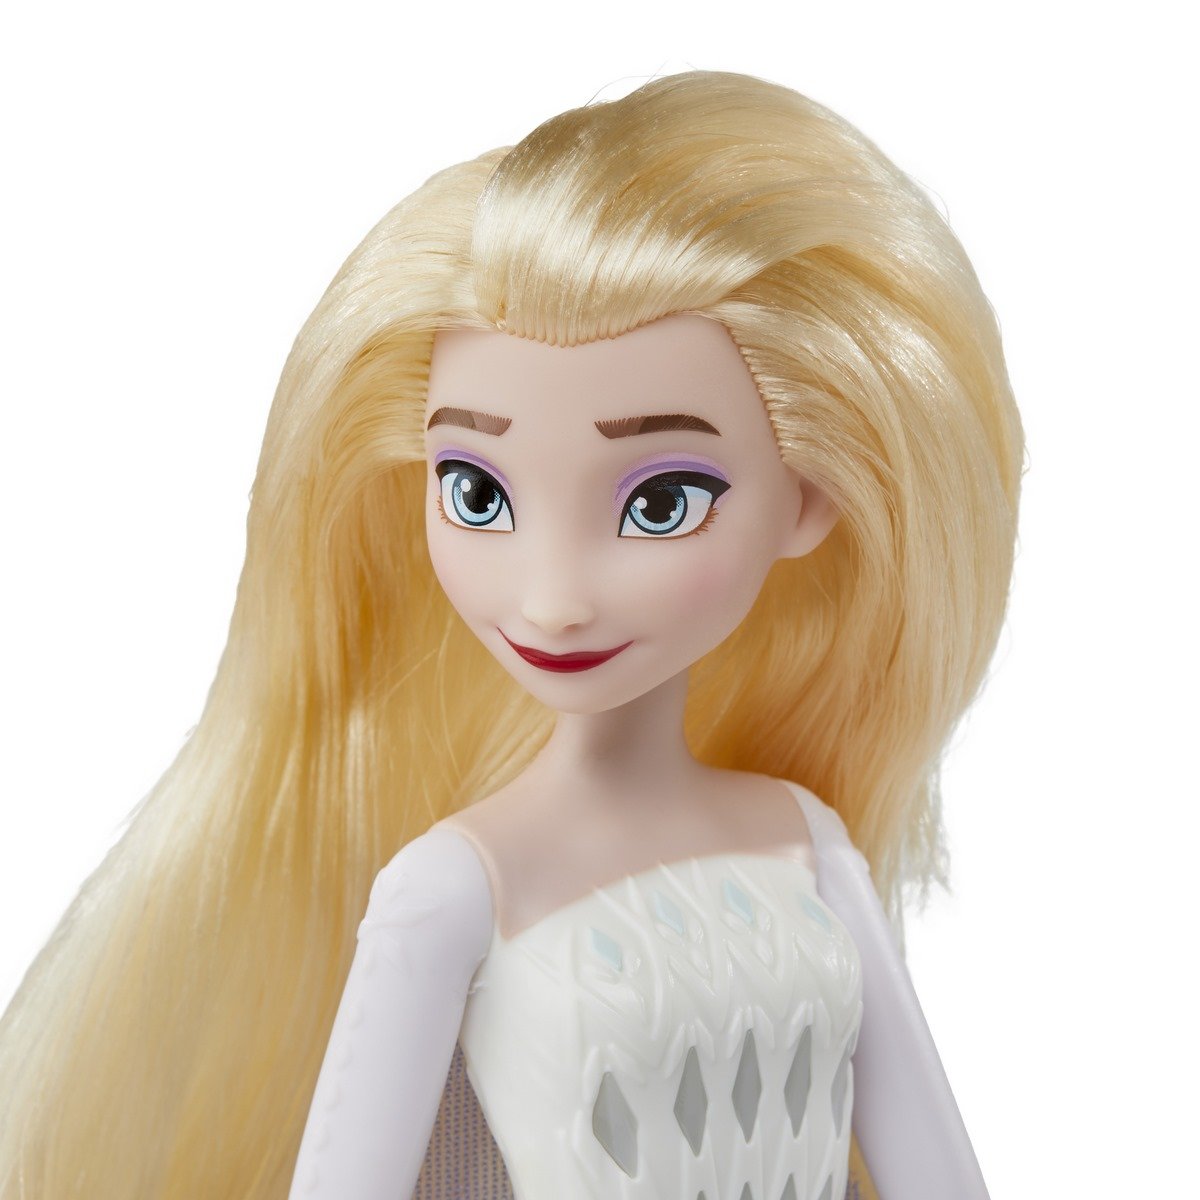 Poupée Princesse Elsa chantante - Disney La Reine des Neiges 2